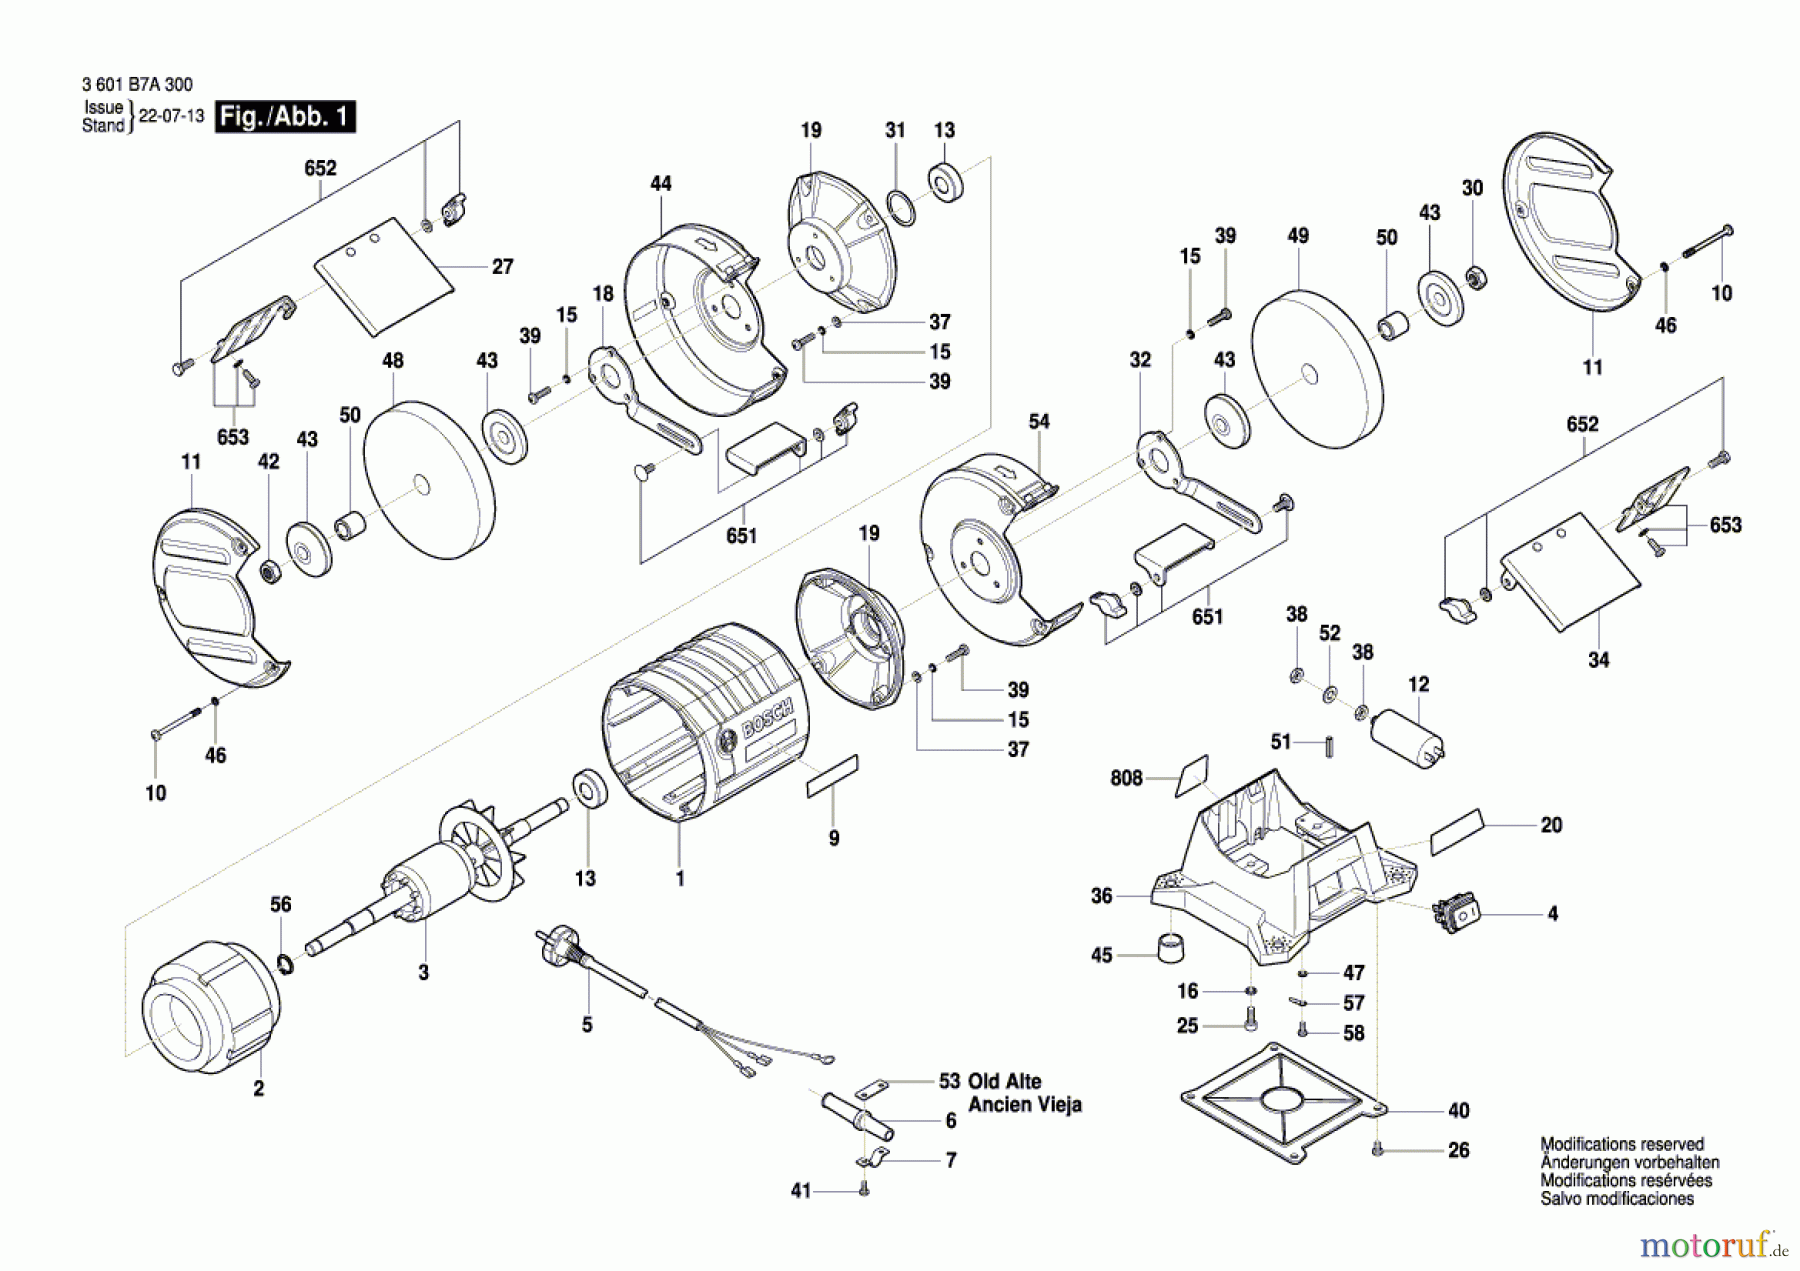  Bosch Werkzeug Schleifbock GBG 35-15 Seite 1